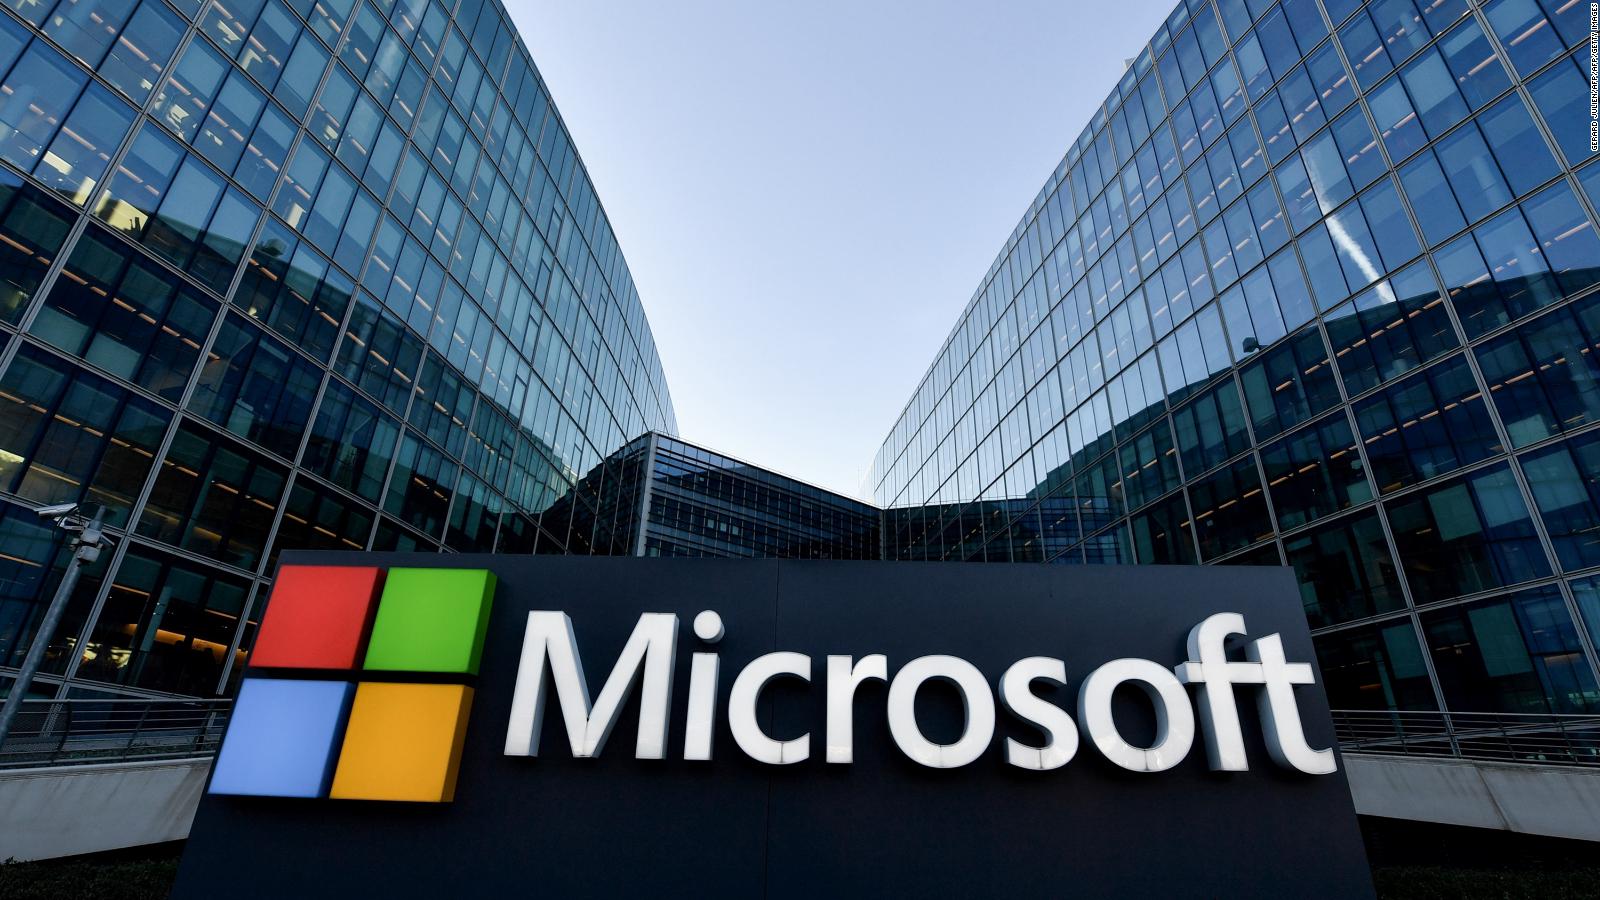 Microsoft Es La Empresa Más Valiosa En El Mercado - Microsoft Corporation - HD Wallpaper 